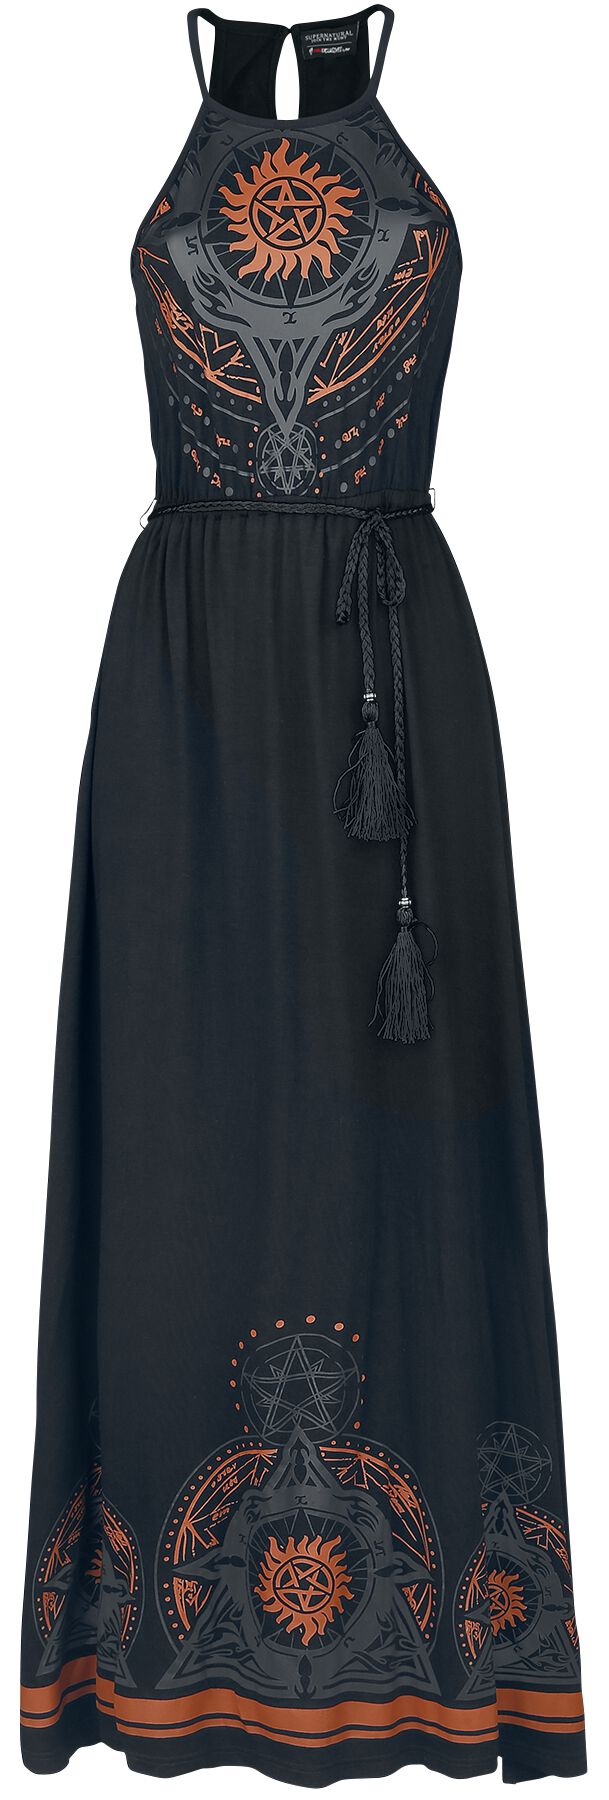 Supernatural Kleid lang - Mandala - S bis XXL - für Damen - Größe L - schwarz  - EMP exklusives Merchandise!